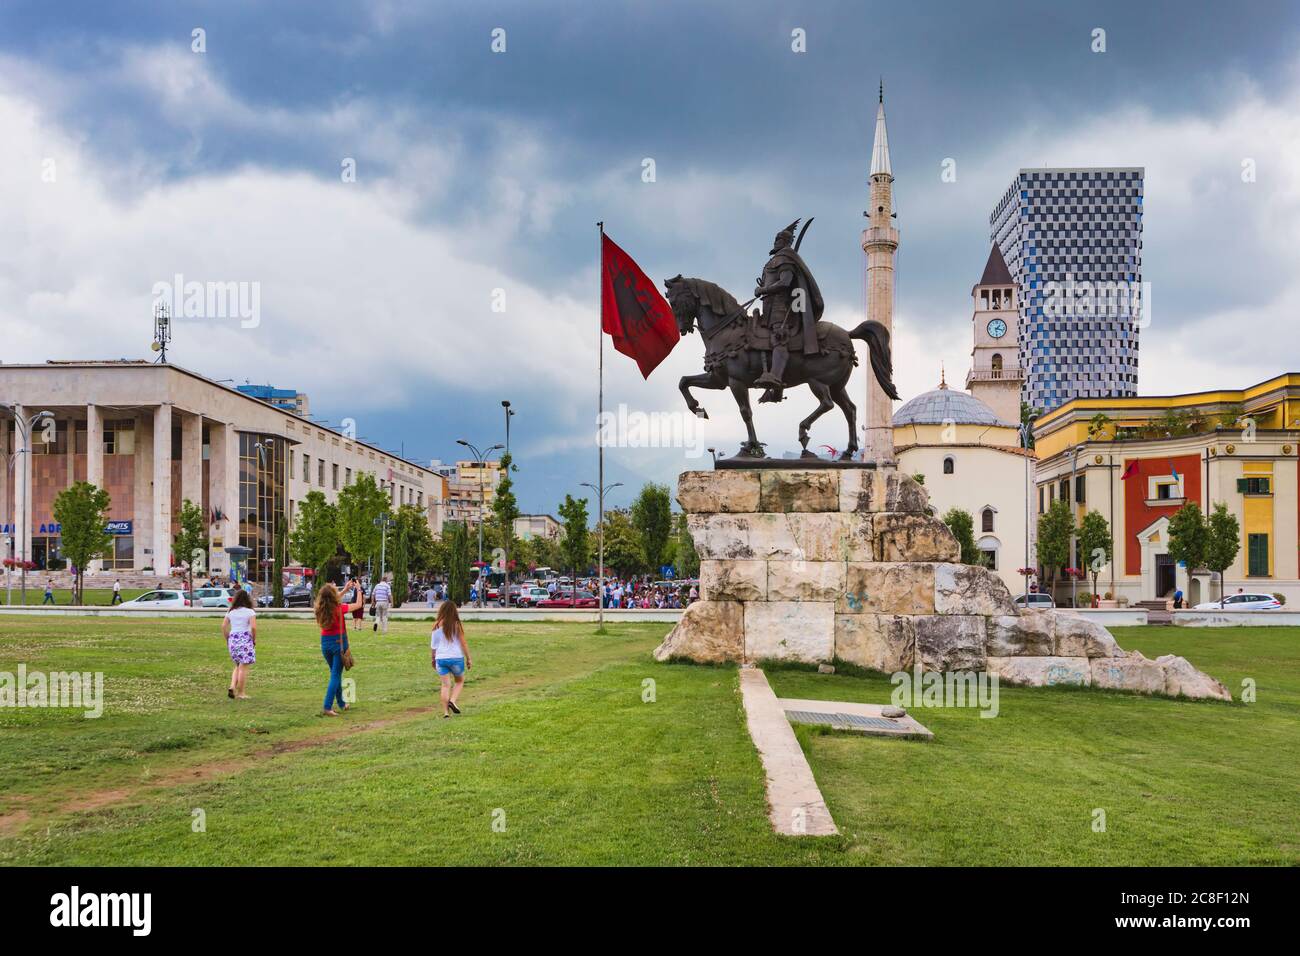 Tirana, Albania. Piazza Skanderbeg con monumento a Skanderbeg, vero nome George Castriot, 1405 – 1468. Bandiera nazionale albanese. Et'Hem Bey mosque in Foto Stock